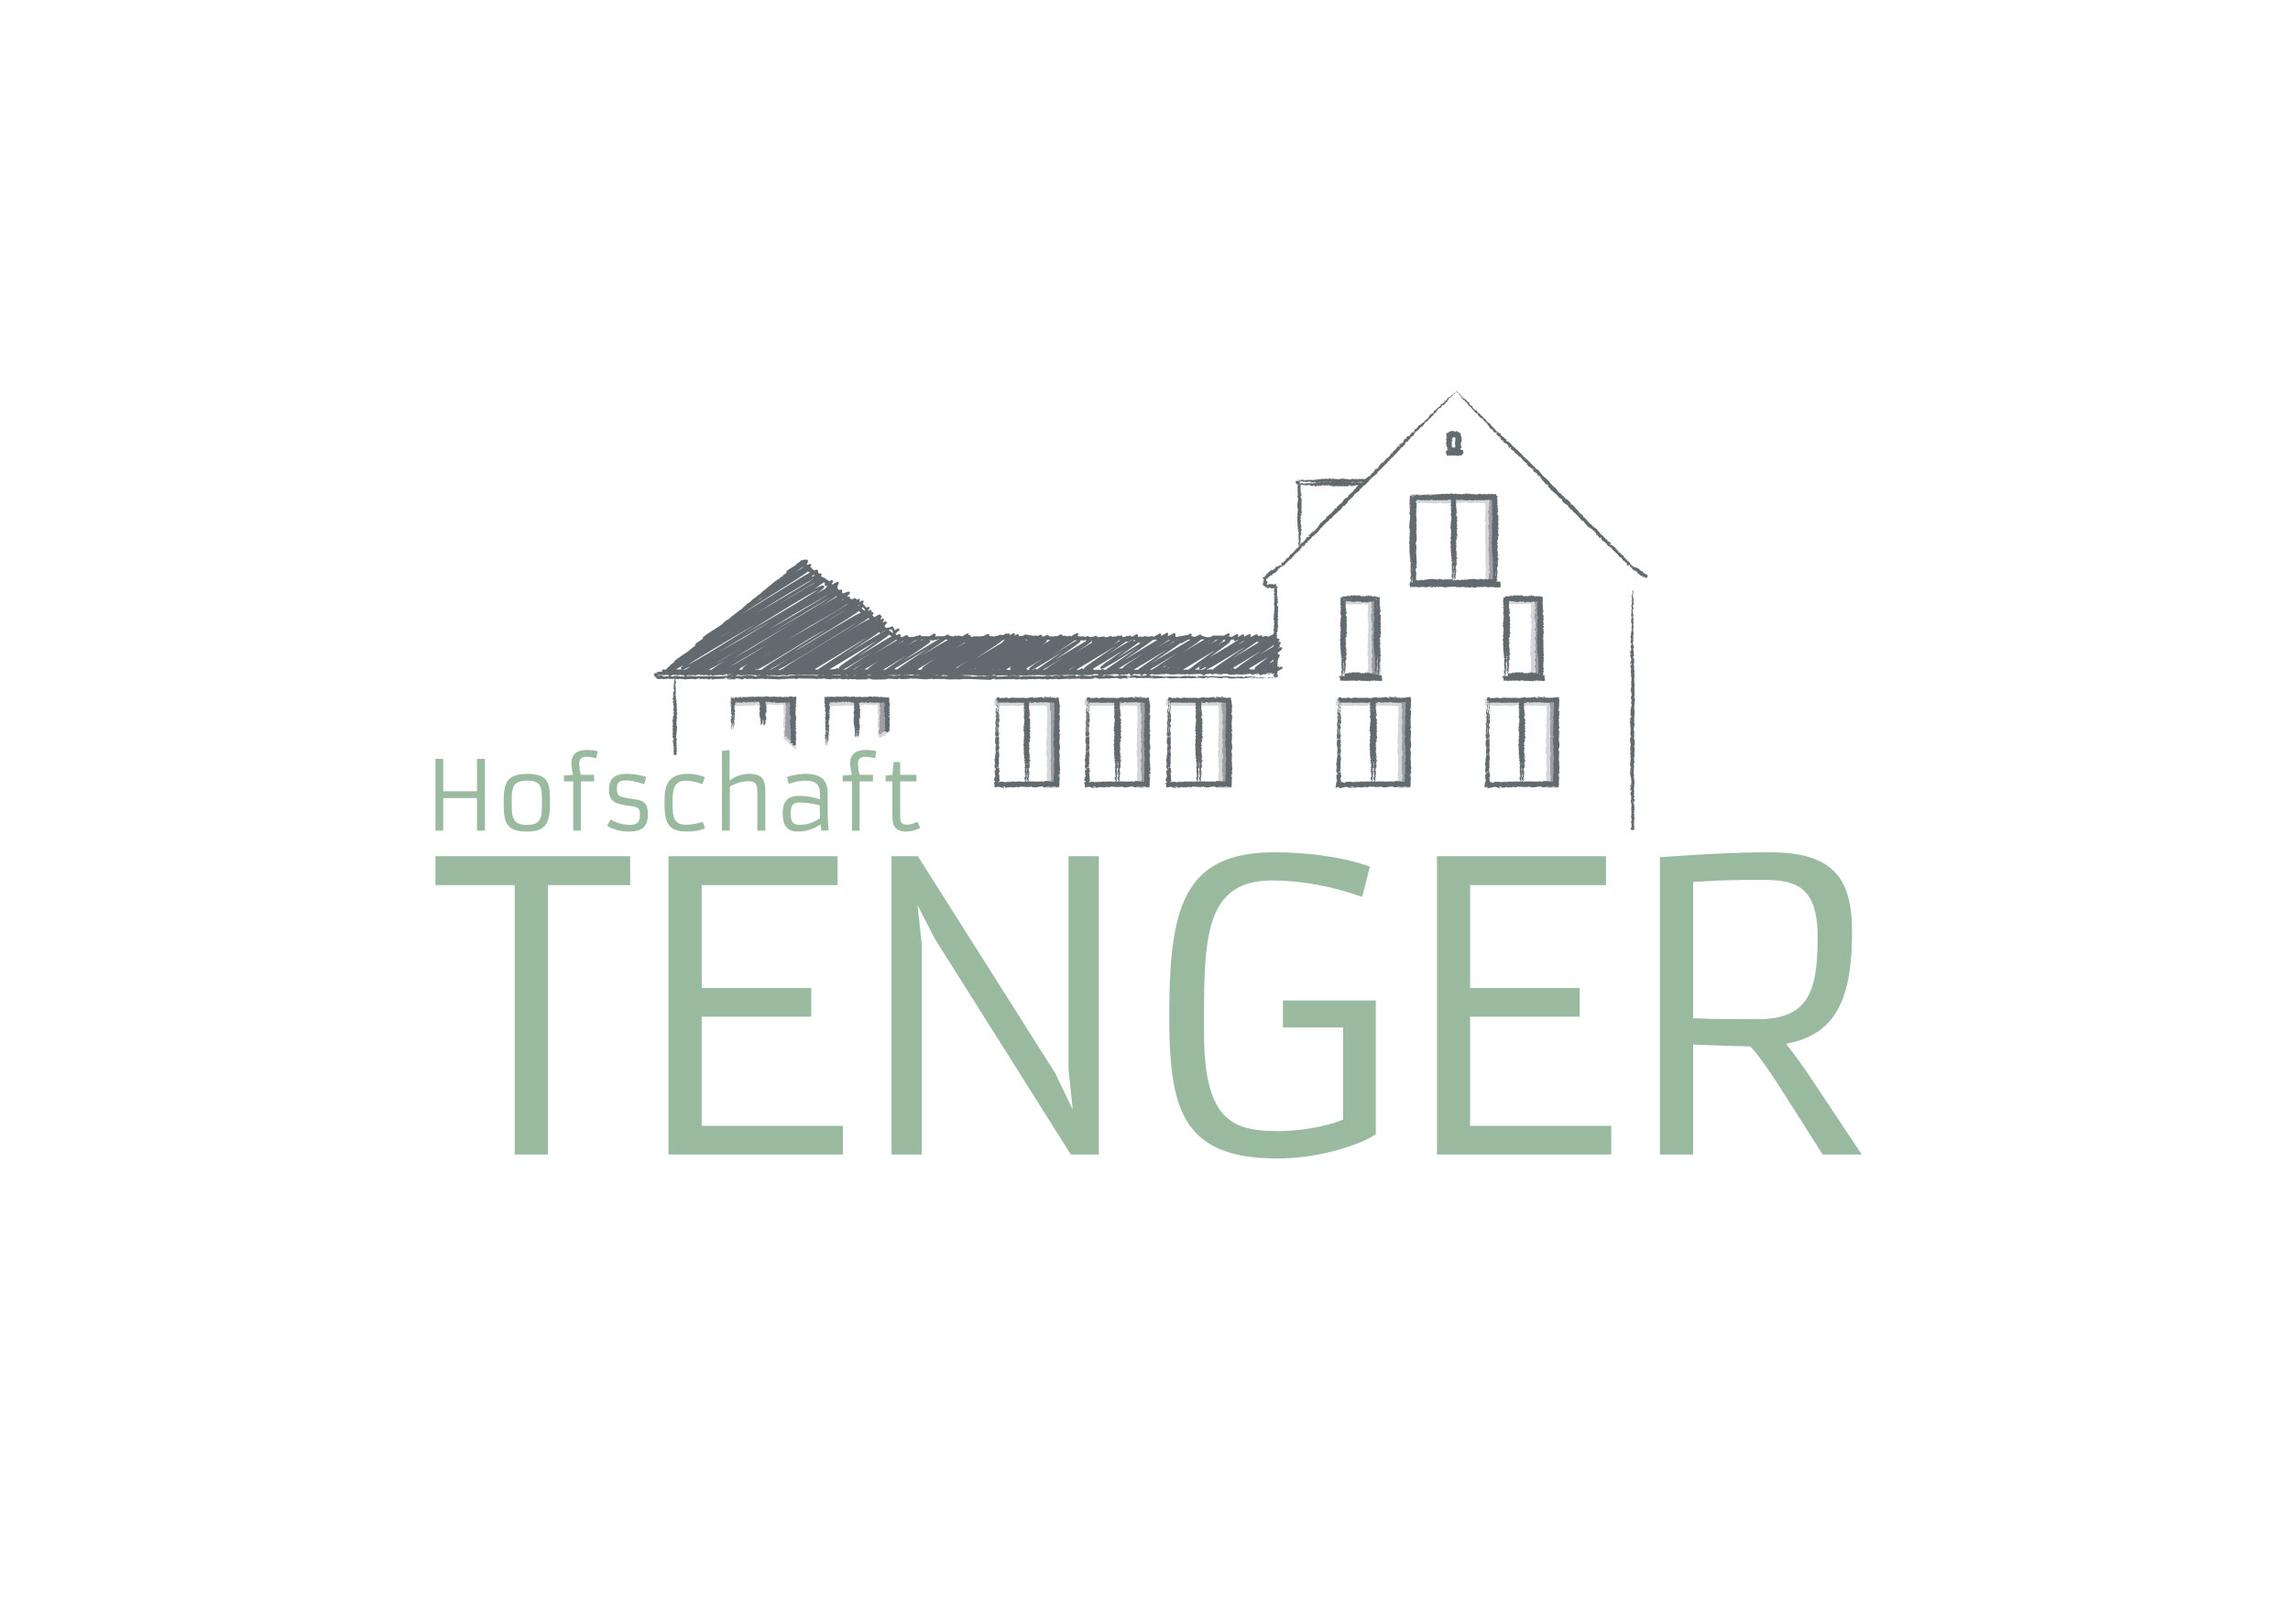 Tenger für Heinemann Immobilien & Bauprojekte